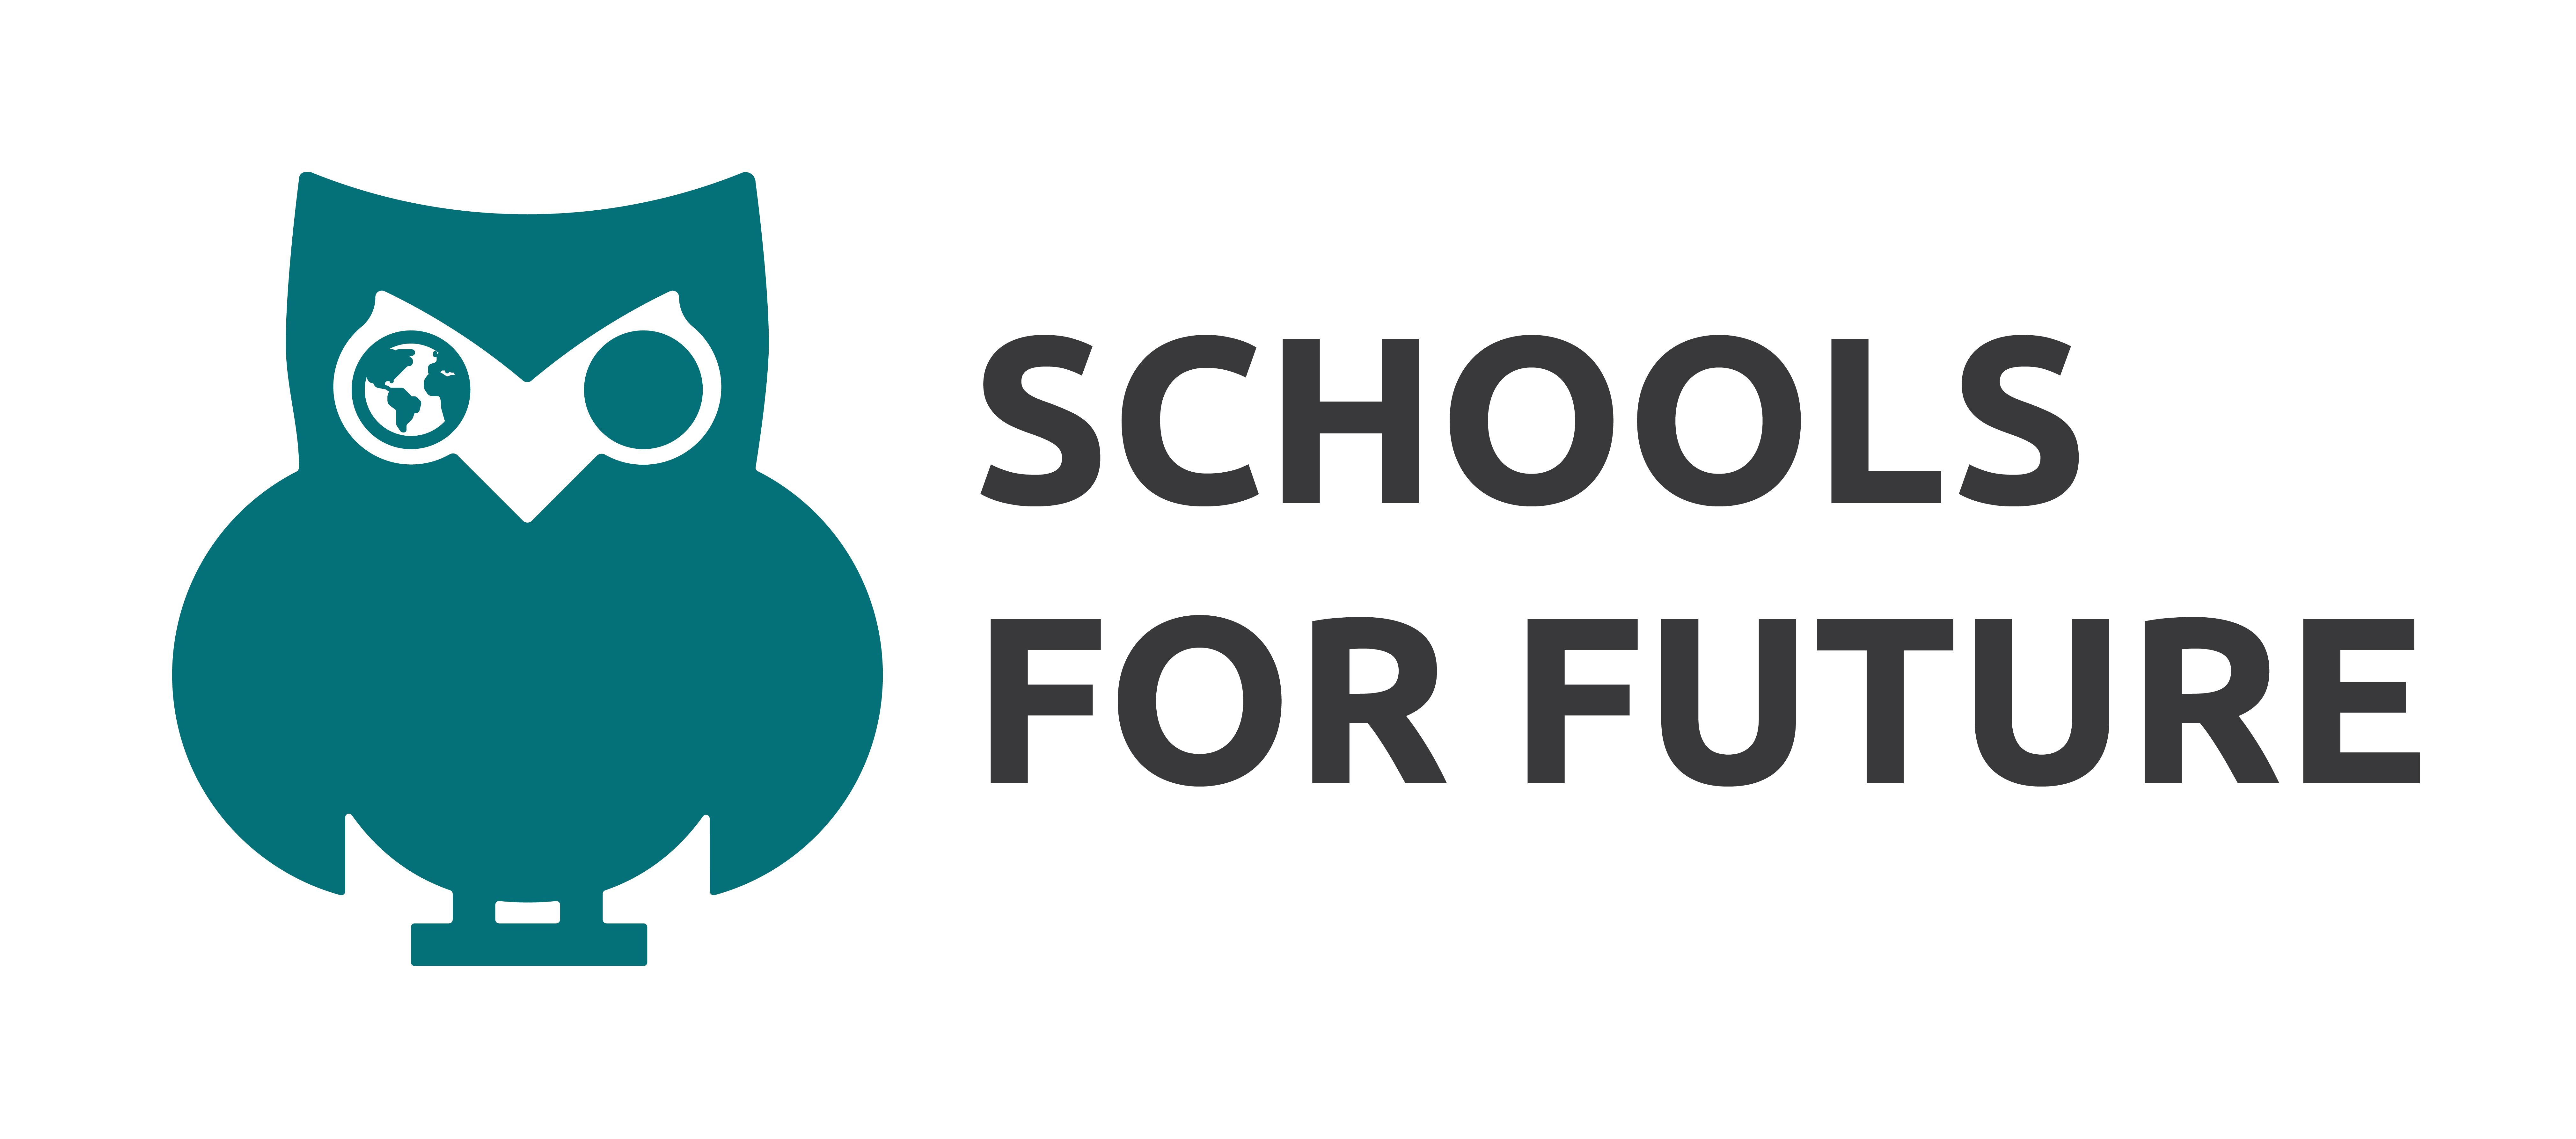 Schools For Future